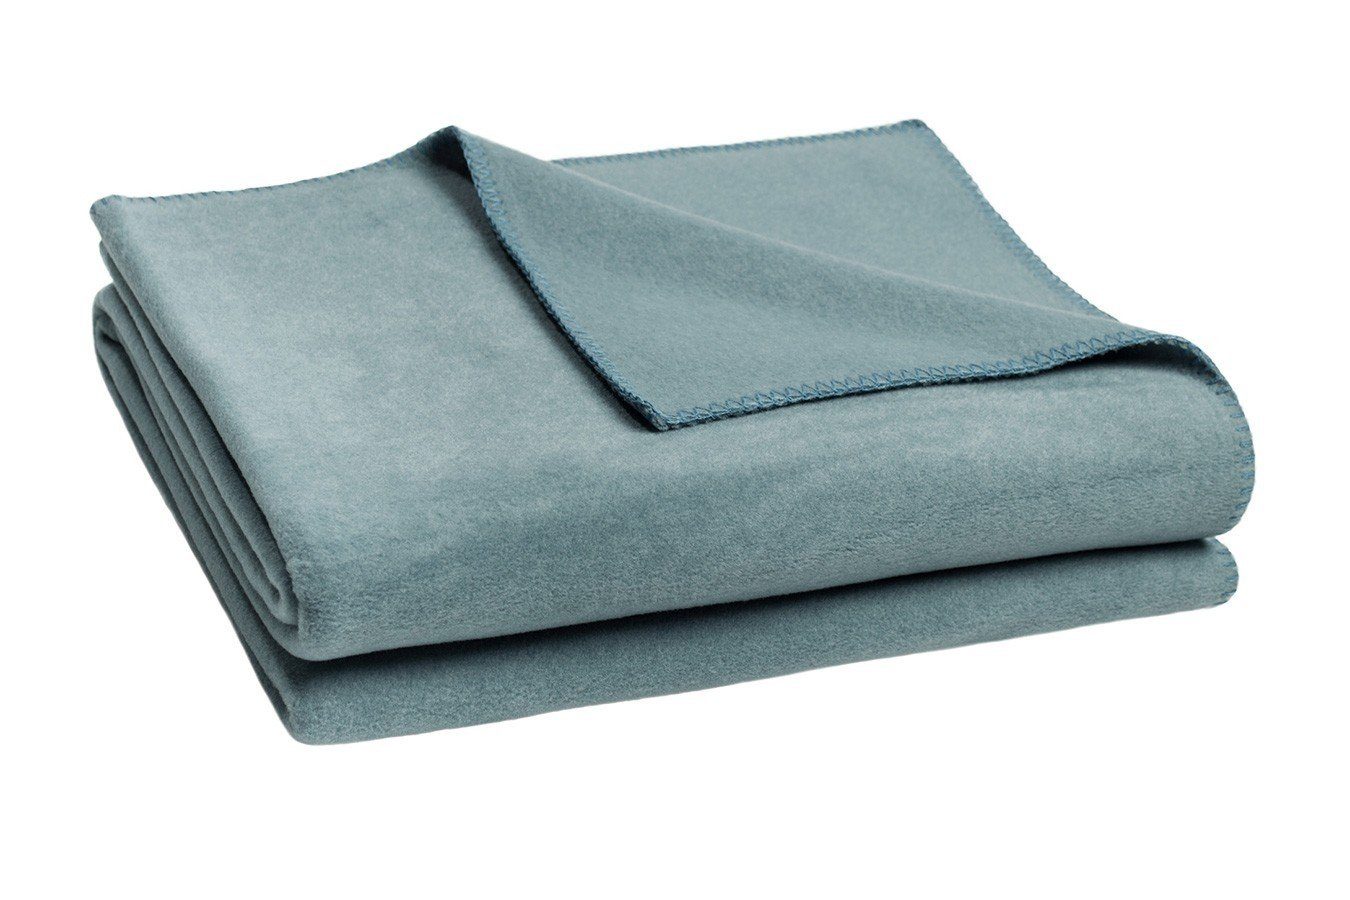 [Produkte zu supergünstigen Preisen] Wohndecke Soft-Fleece Decke living daslagerhaus 200 x cm denim, 160